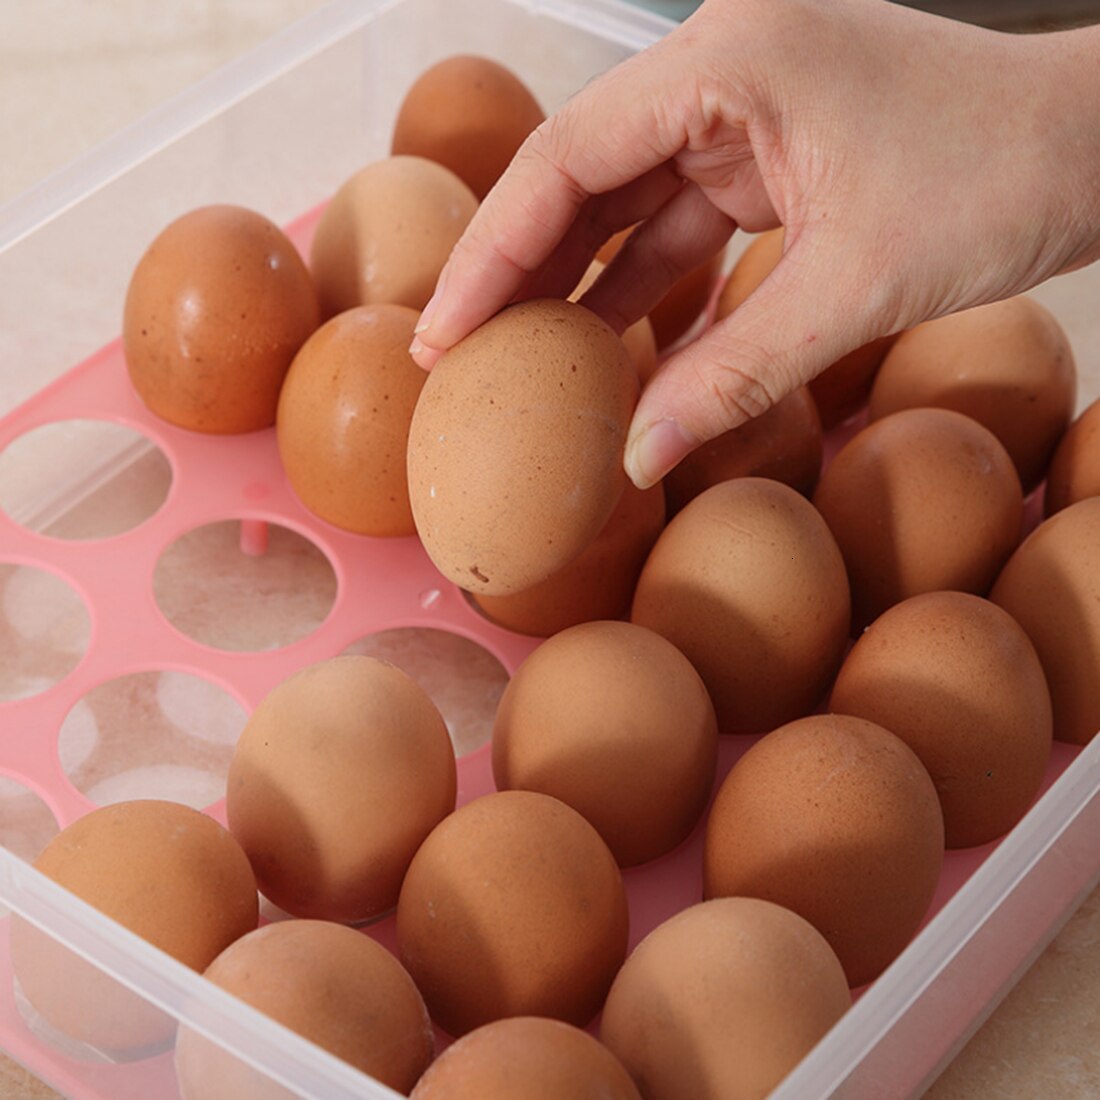 Simpan telur di luar kulkas (ruangan)